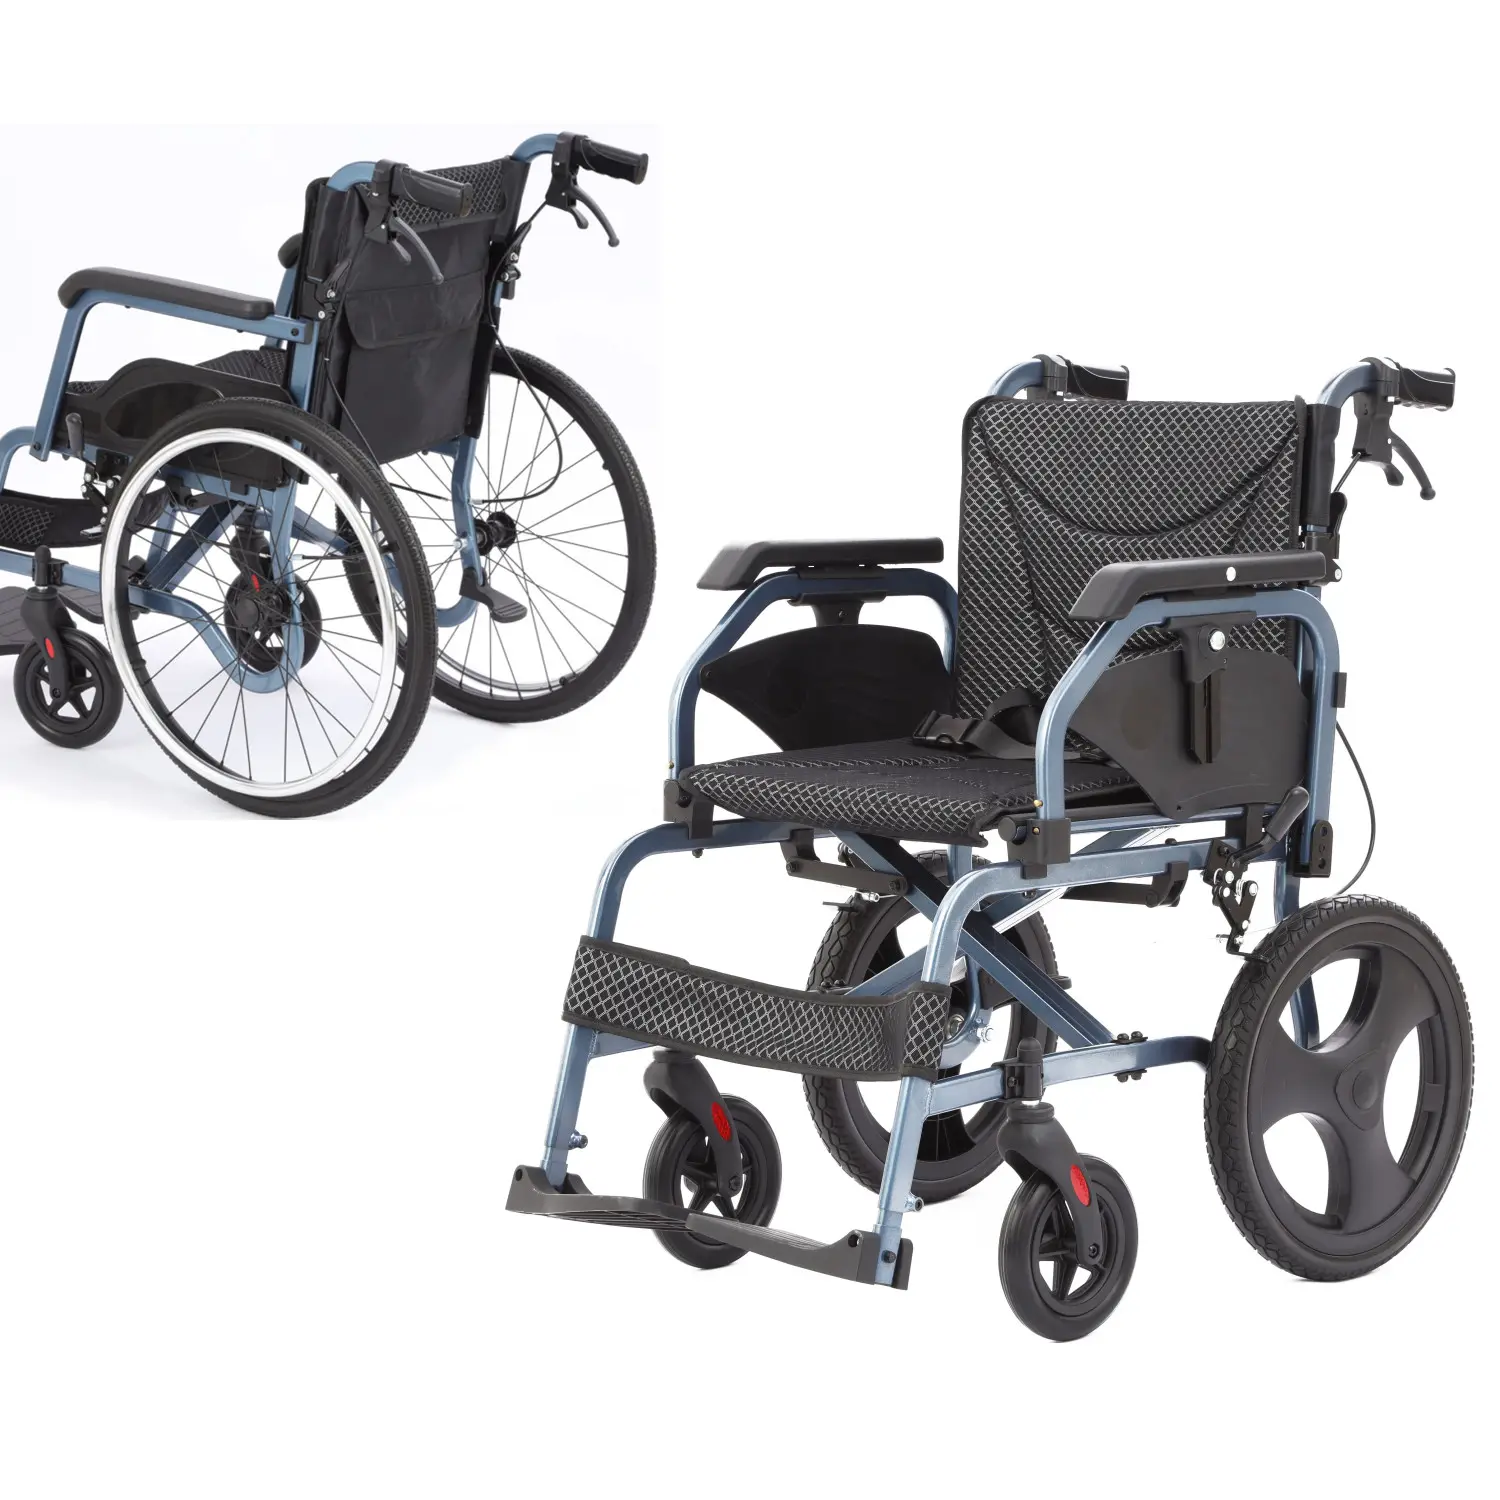 Silla de ruedas con marco de aluminio azul para discapacitados, ligera, manual, para adultos